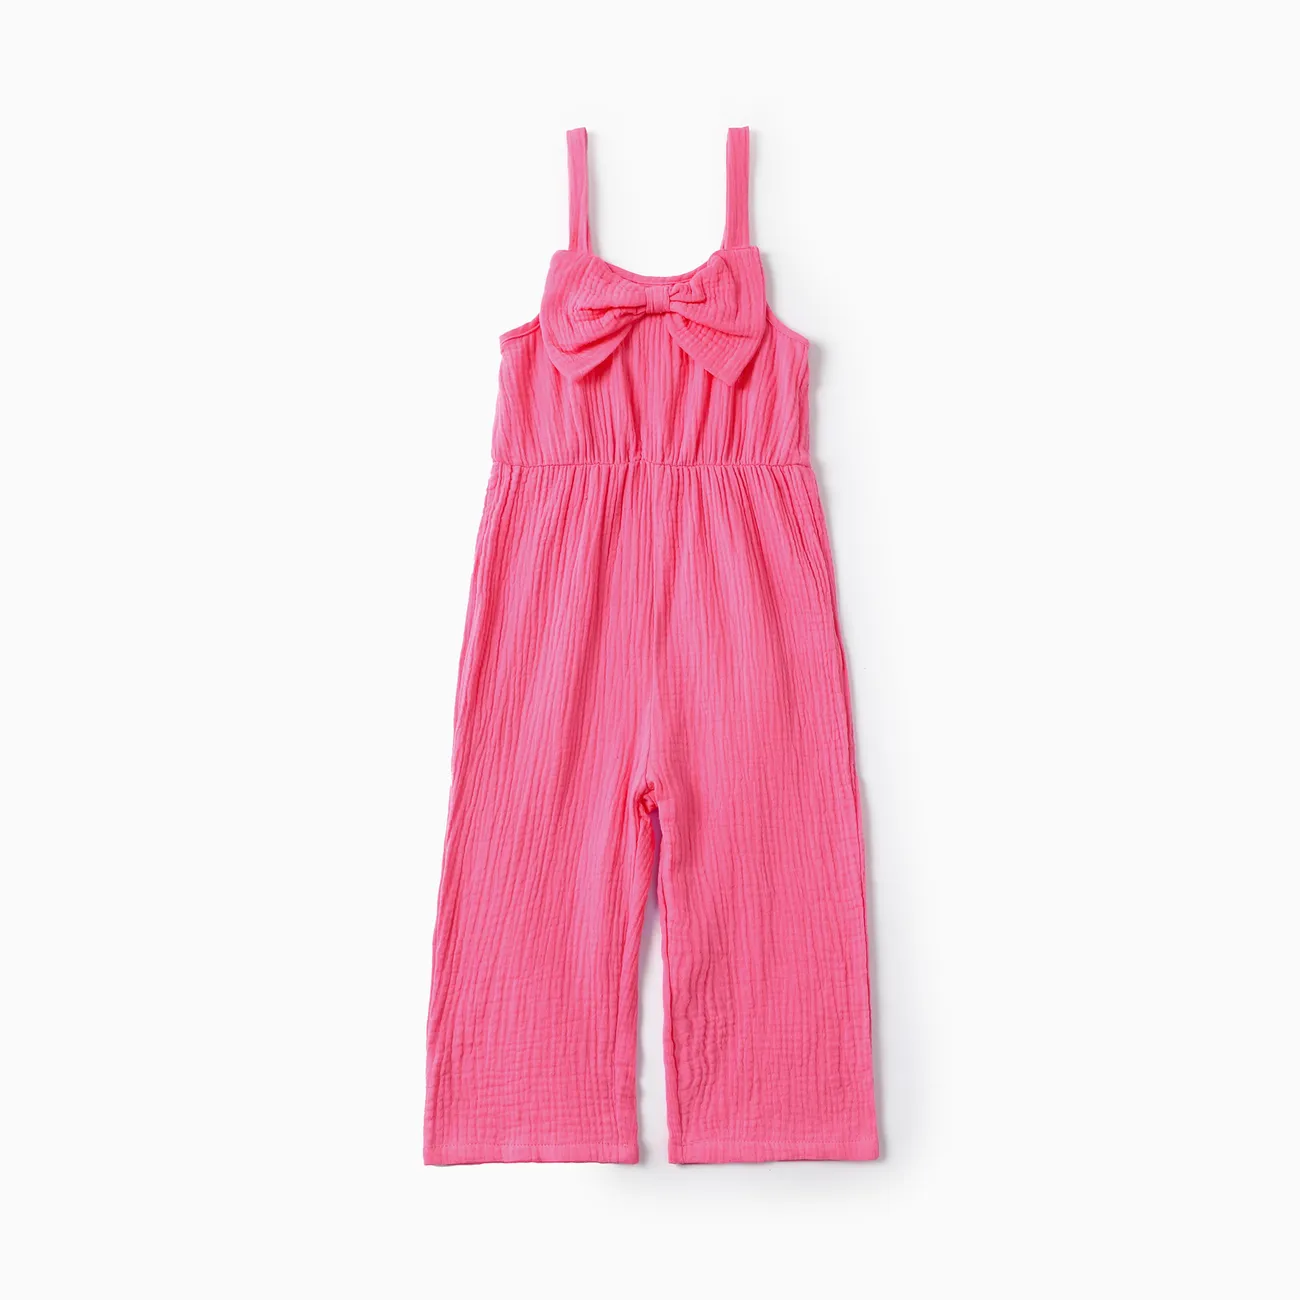 طفل صغير الفتيات الحلو شنقا حزام تصميم الوردي القطن رومبير  زهري big image 1